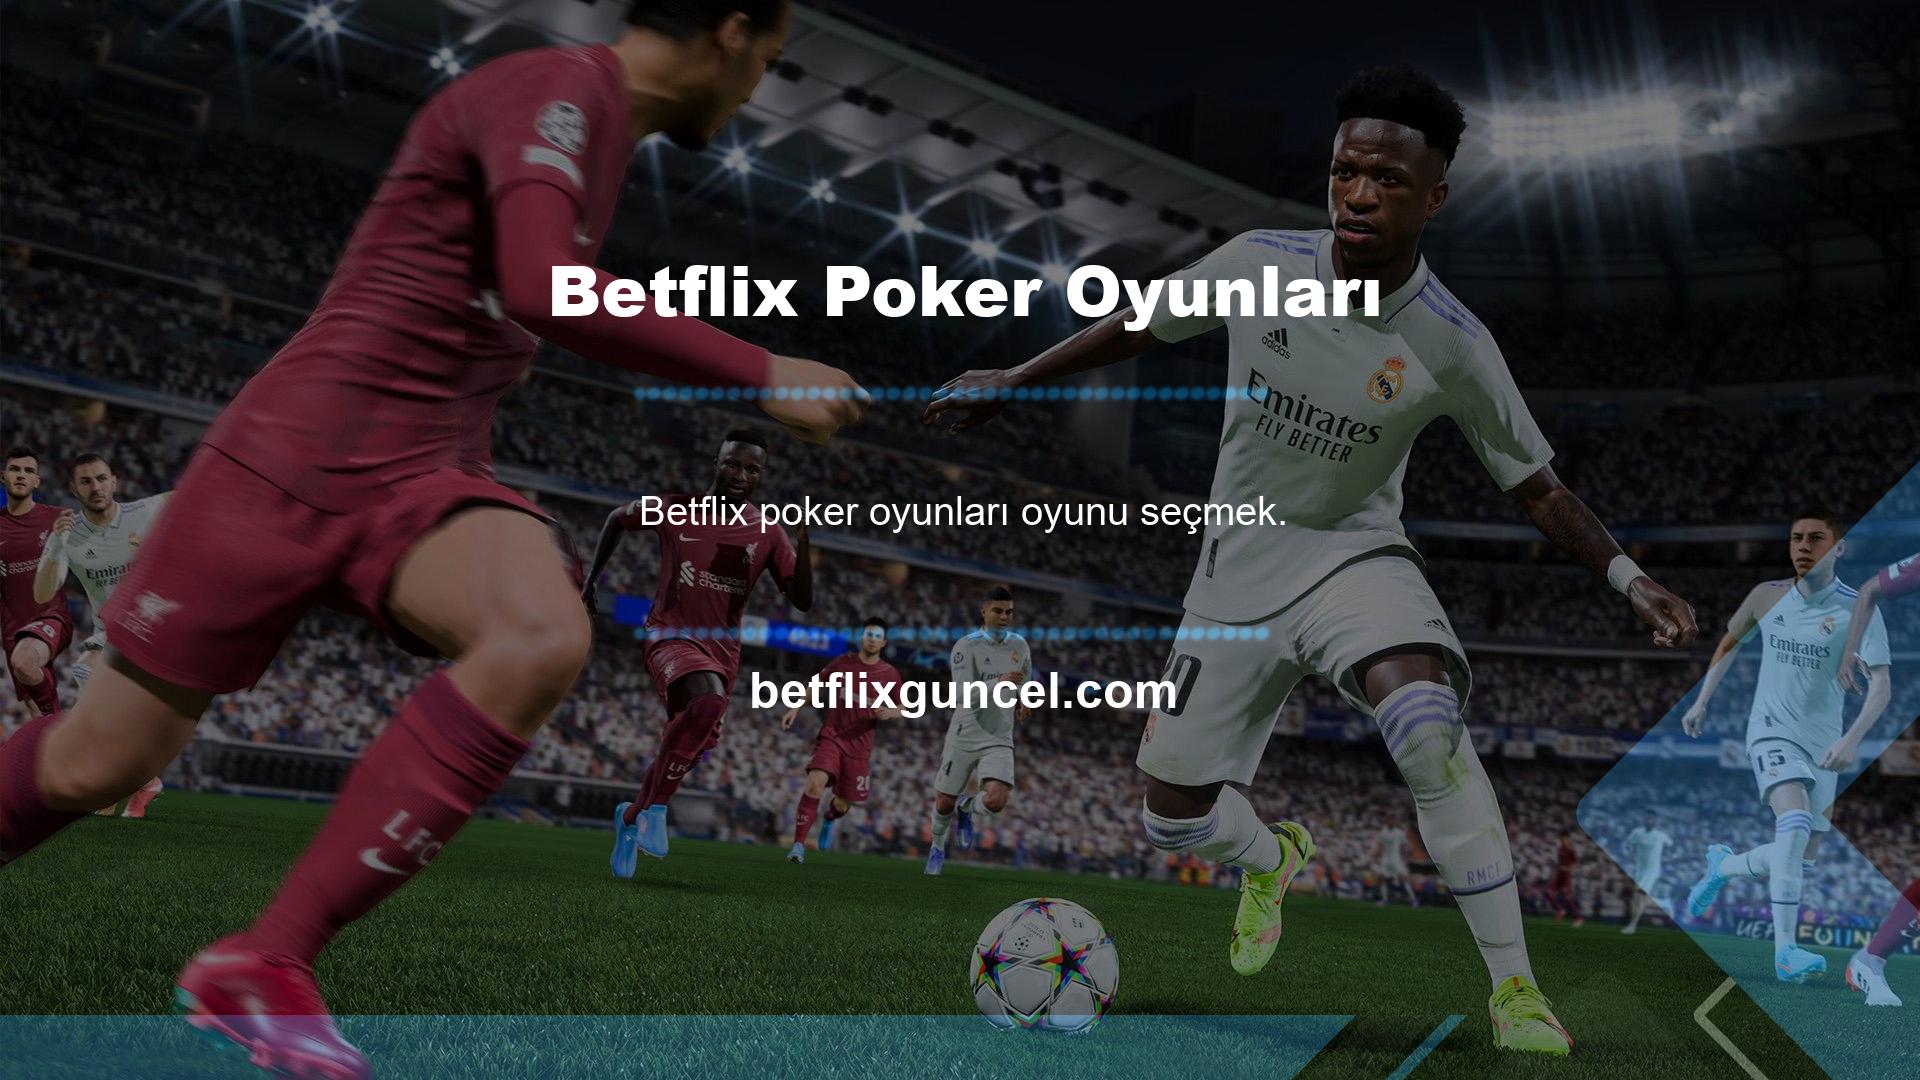 Daha önce casinolarda ve arkadaşlarla oynanan Betflix poker oyunlarını artık çeşitli platformlar sunuyor